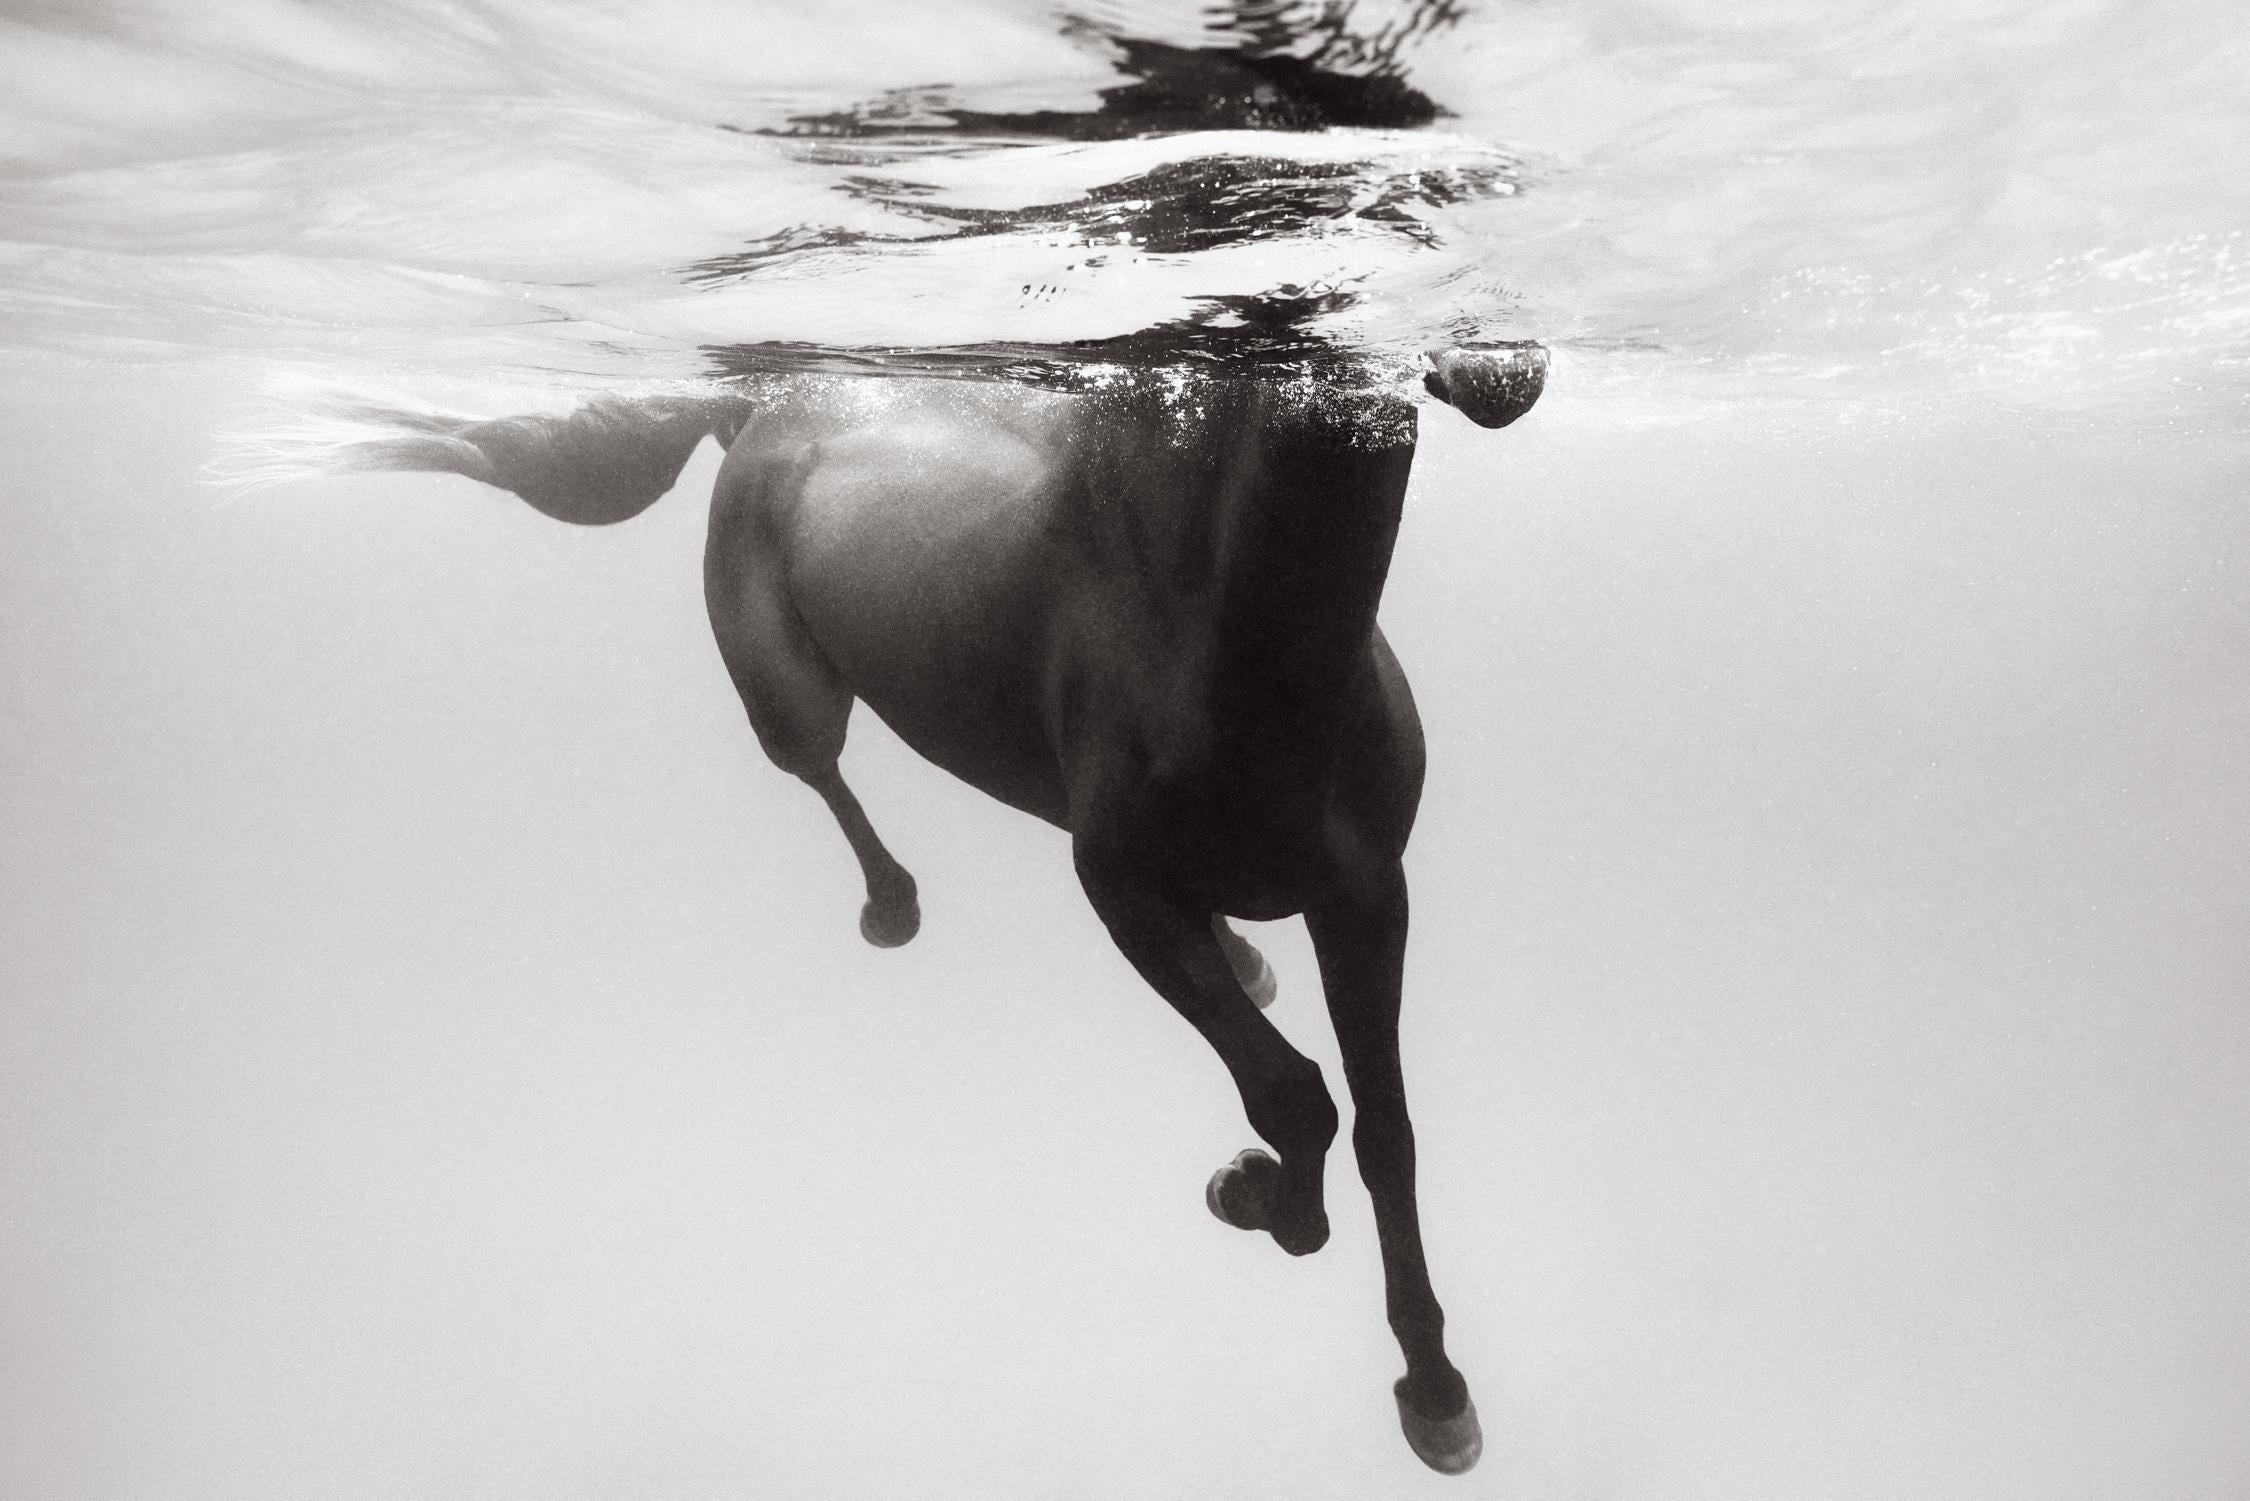 Drew Doggett Black and White Photograph – Dunkles Pferd schwimmt mit klarem Wasser, Design und Mode inspiriert, Reiter